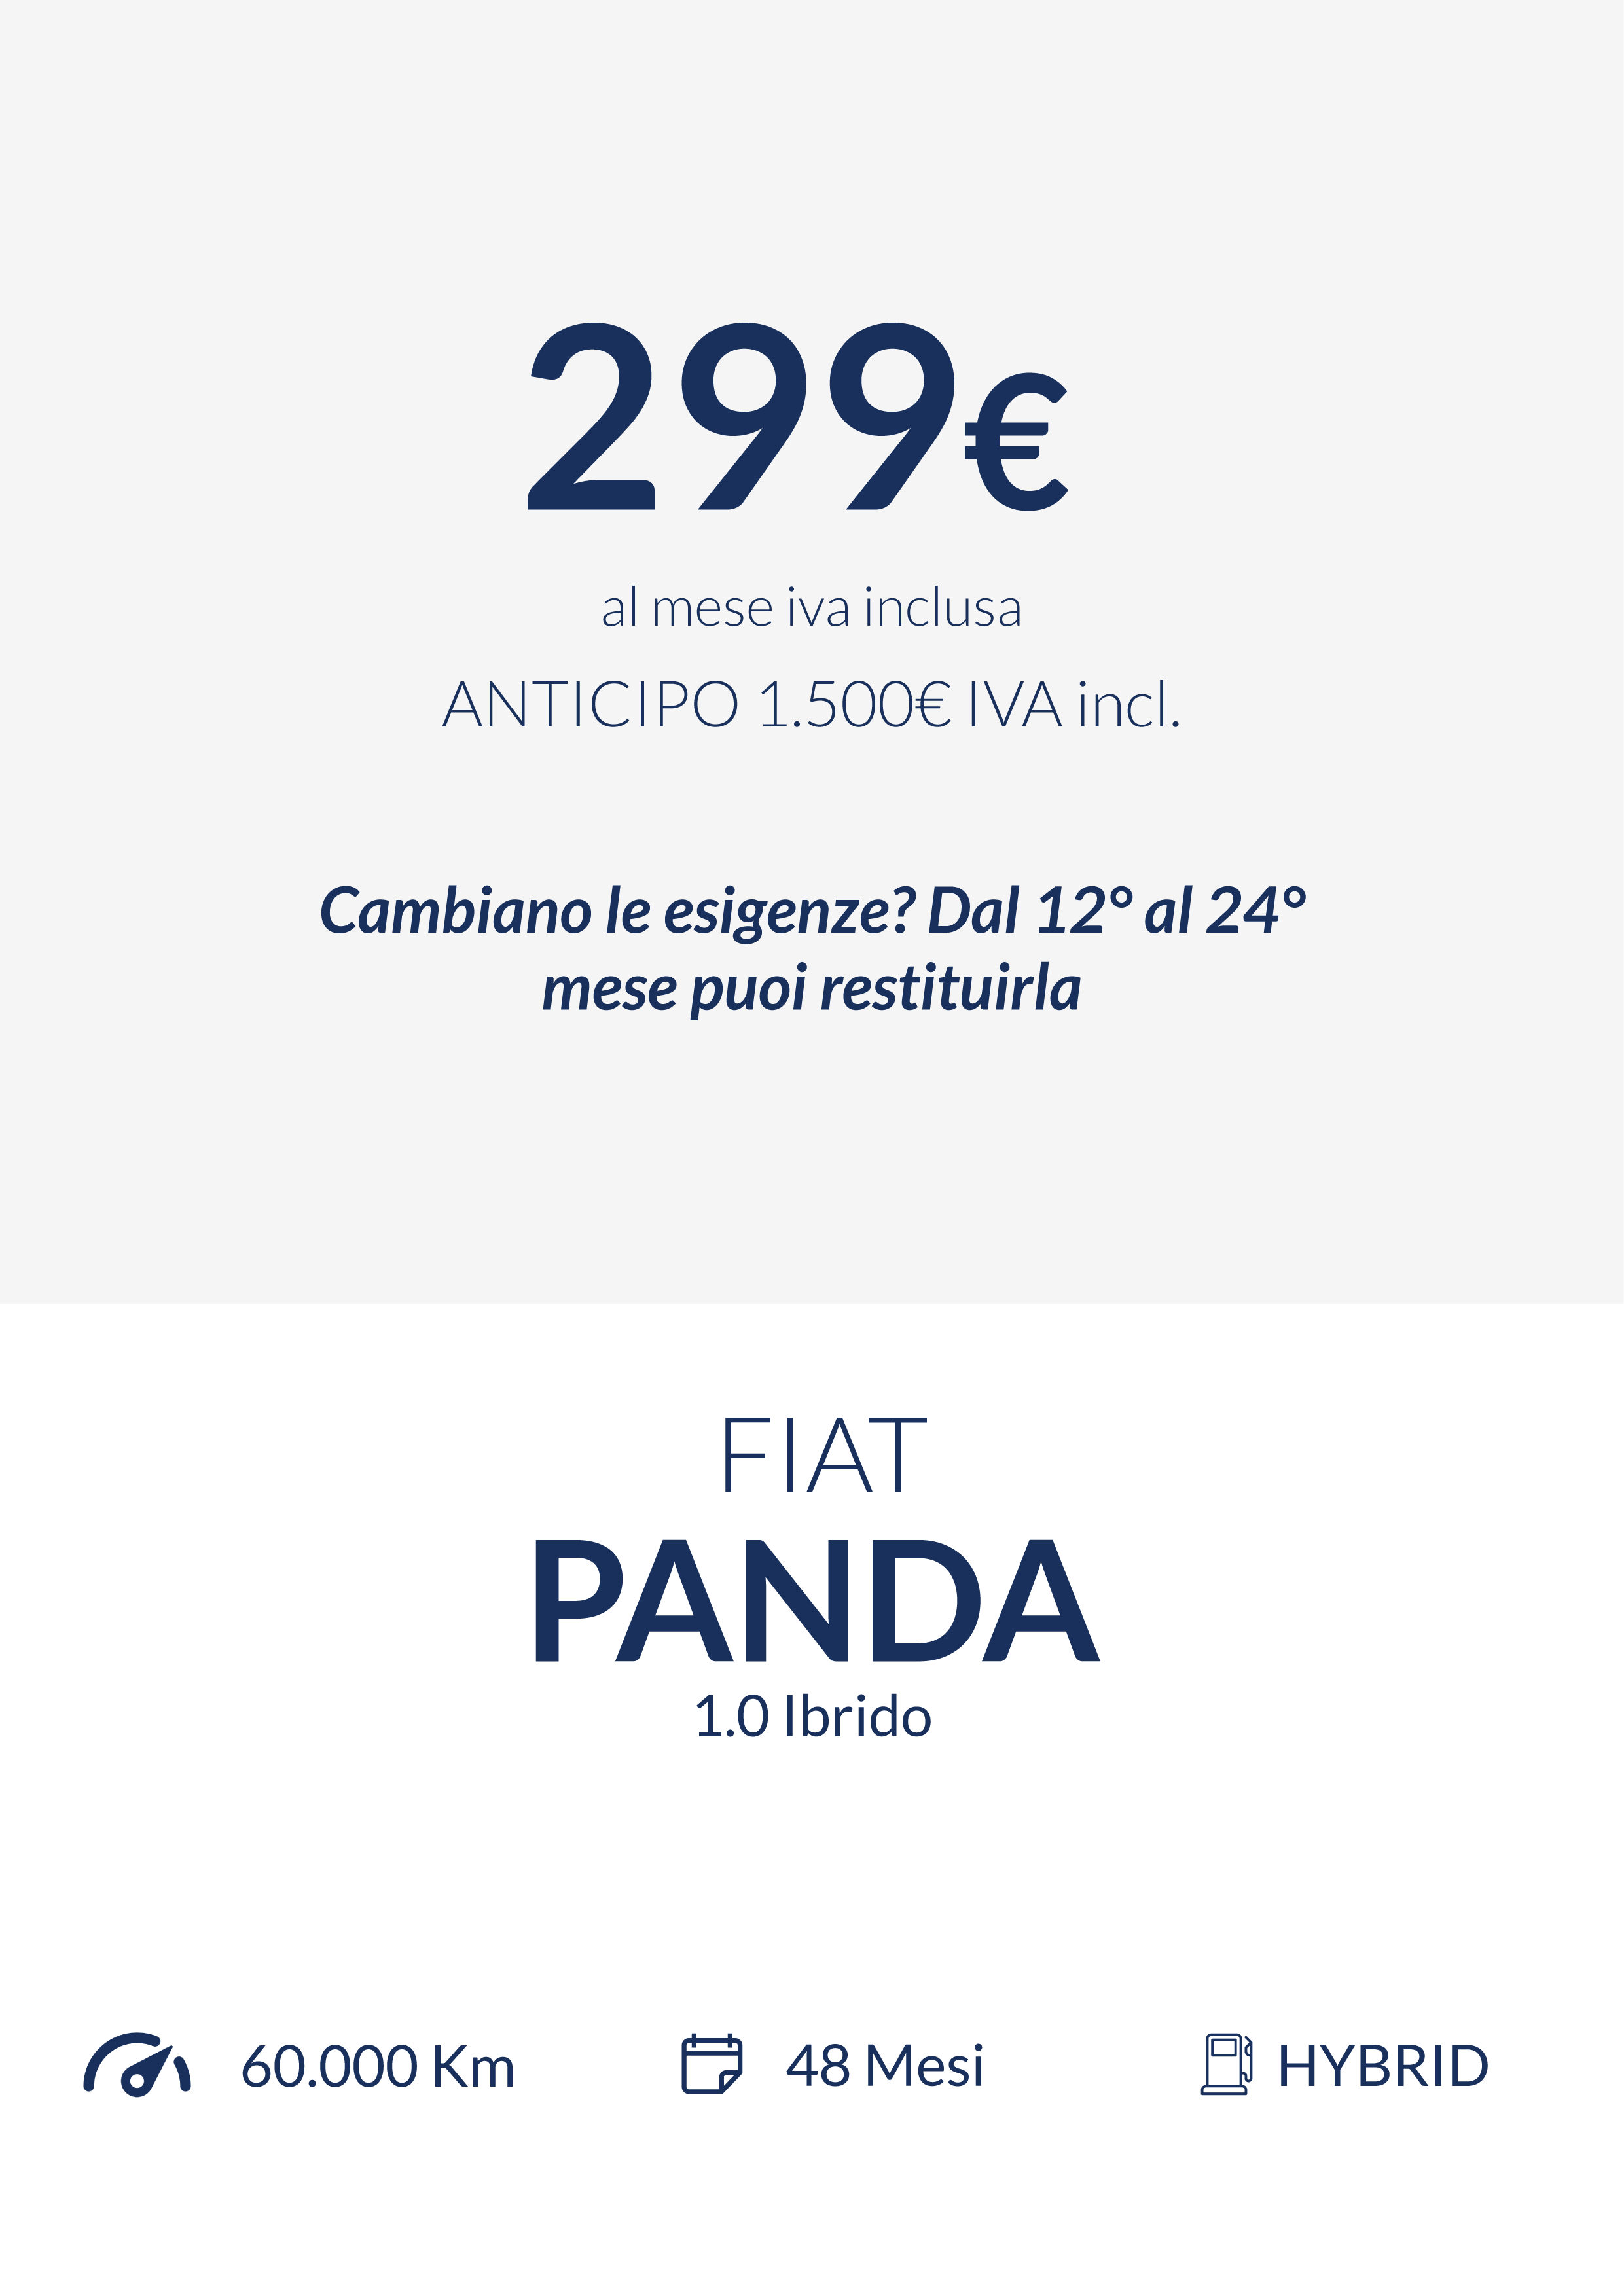 Fiat-Panda-Re